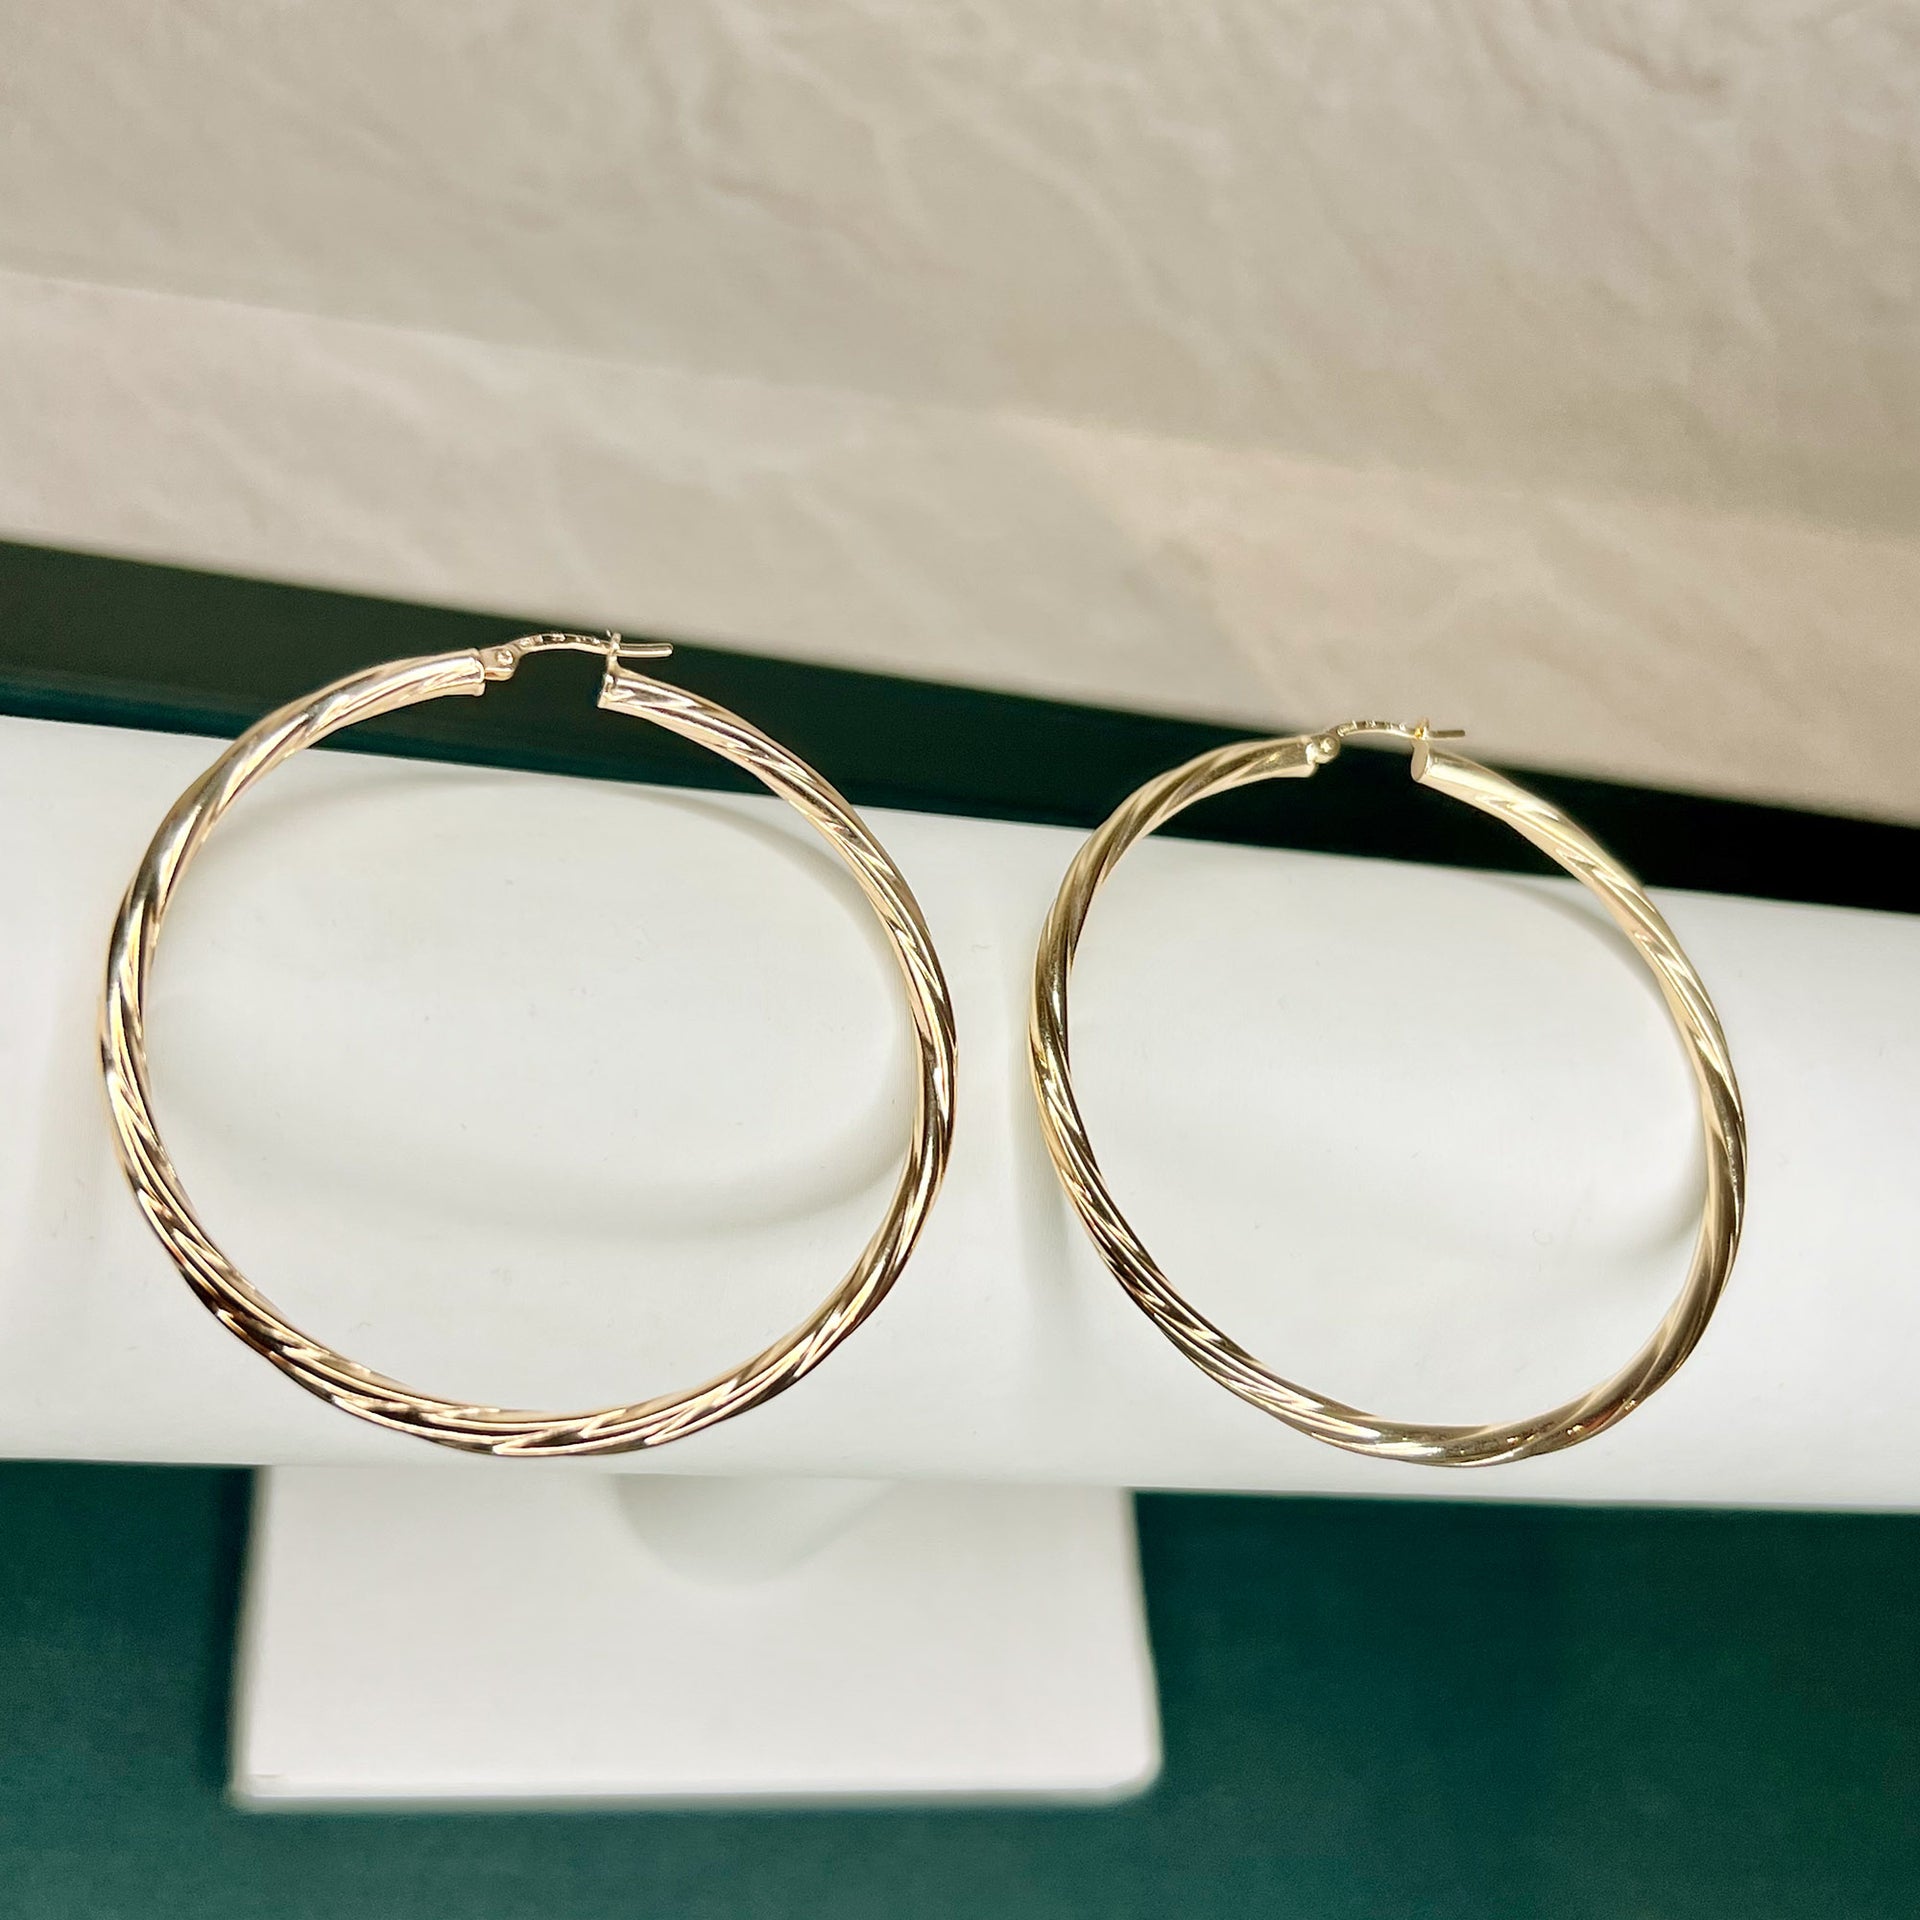 9ct solid Gold Hoop Earrings 54mm